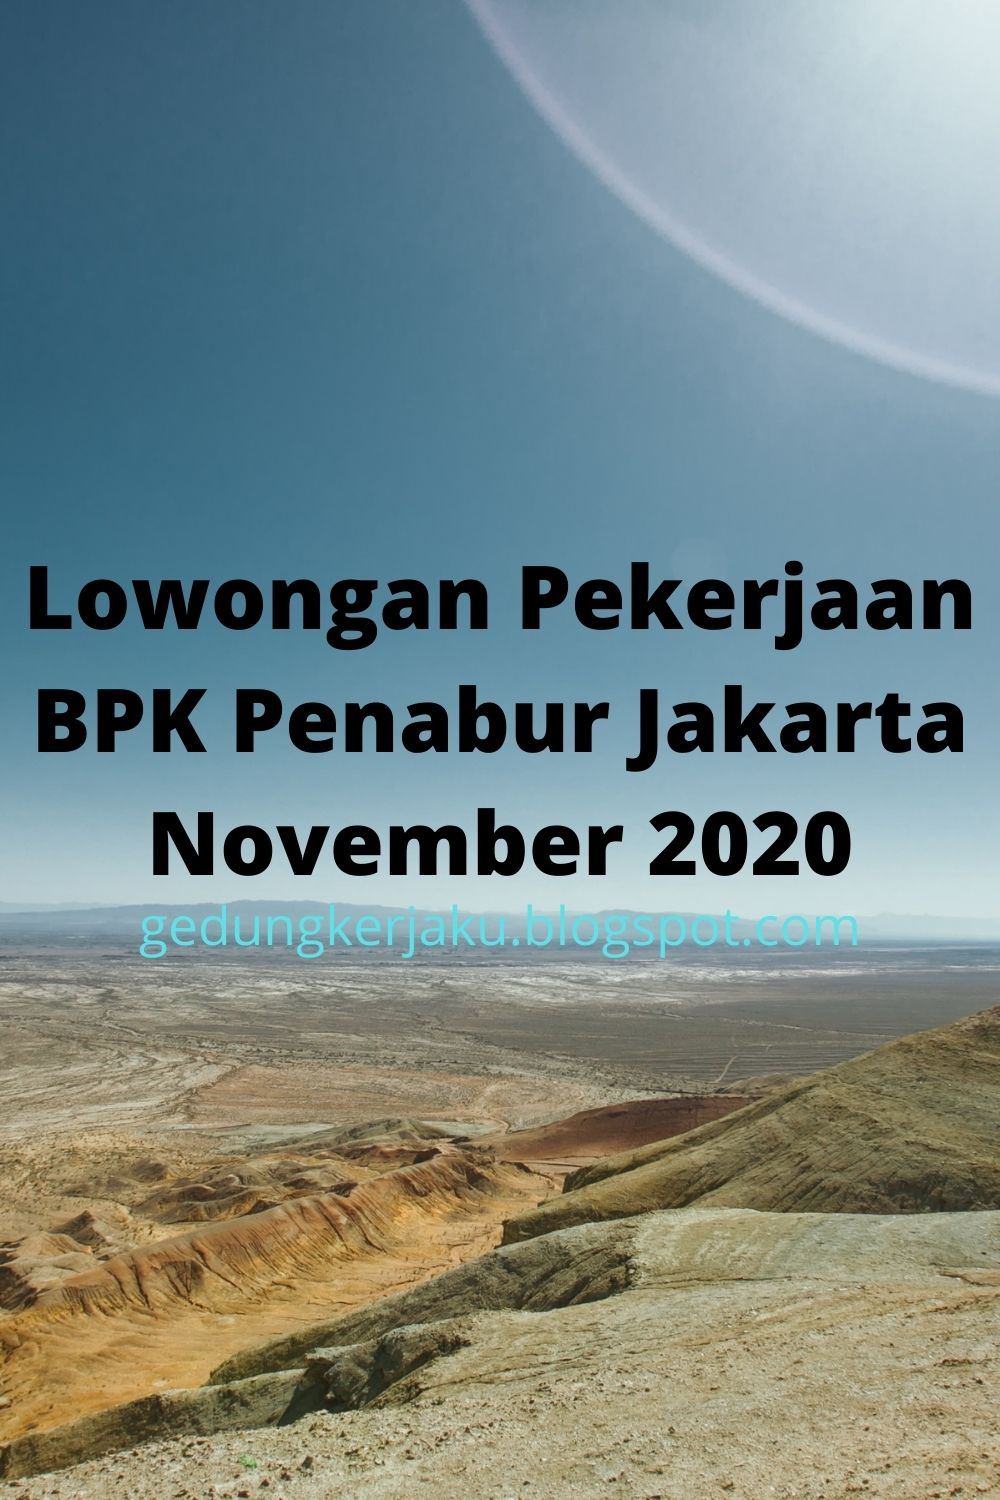 Lowongan Pekerjaan BPK Penabur Jakarta November 2020